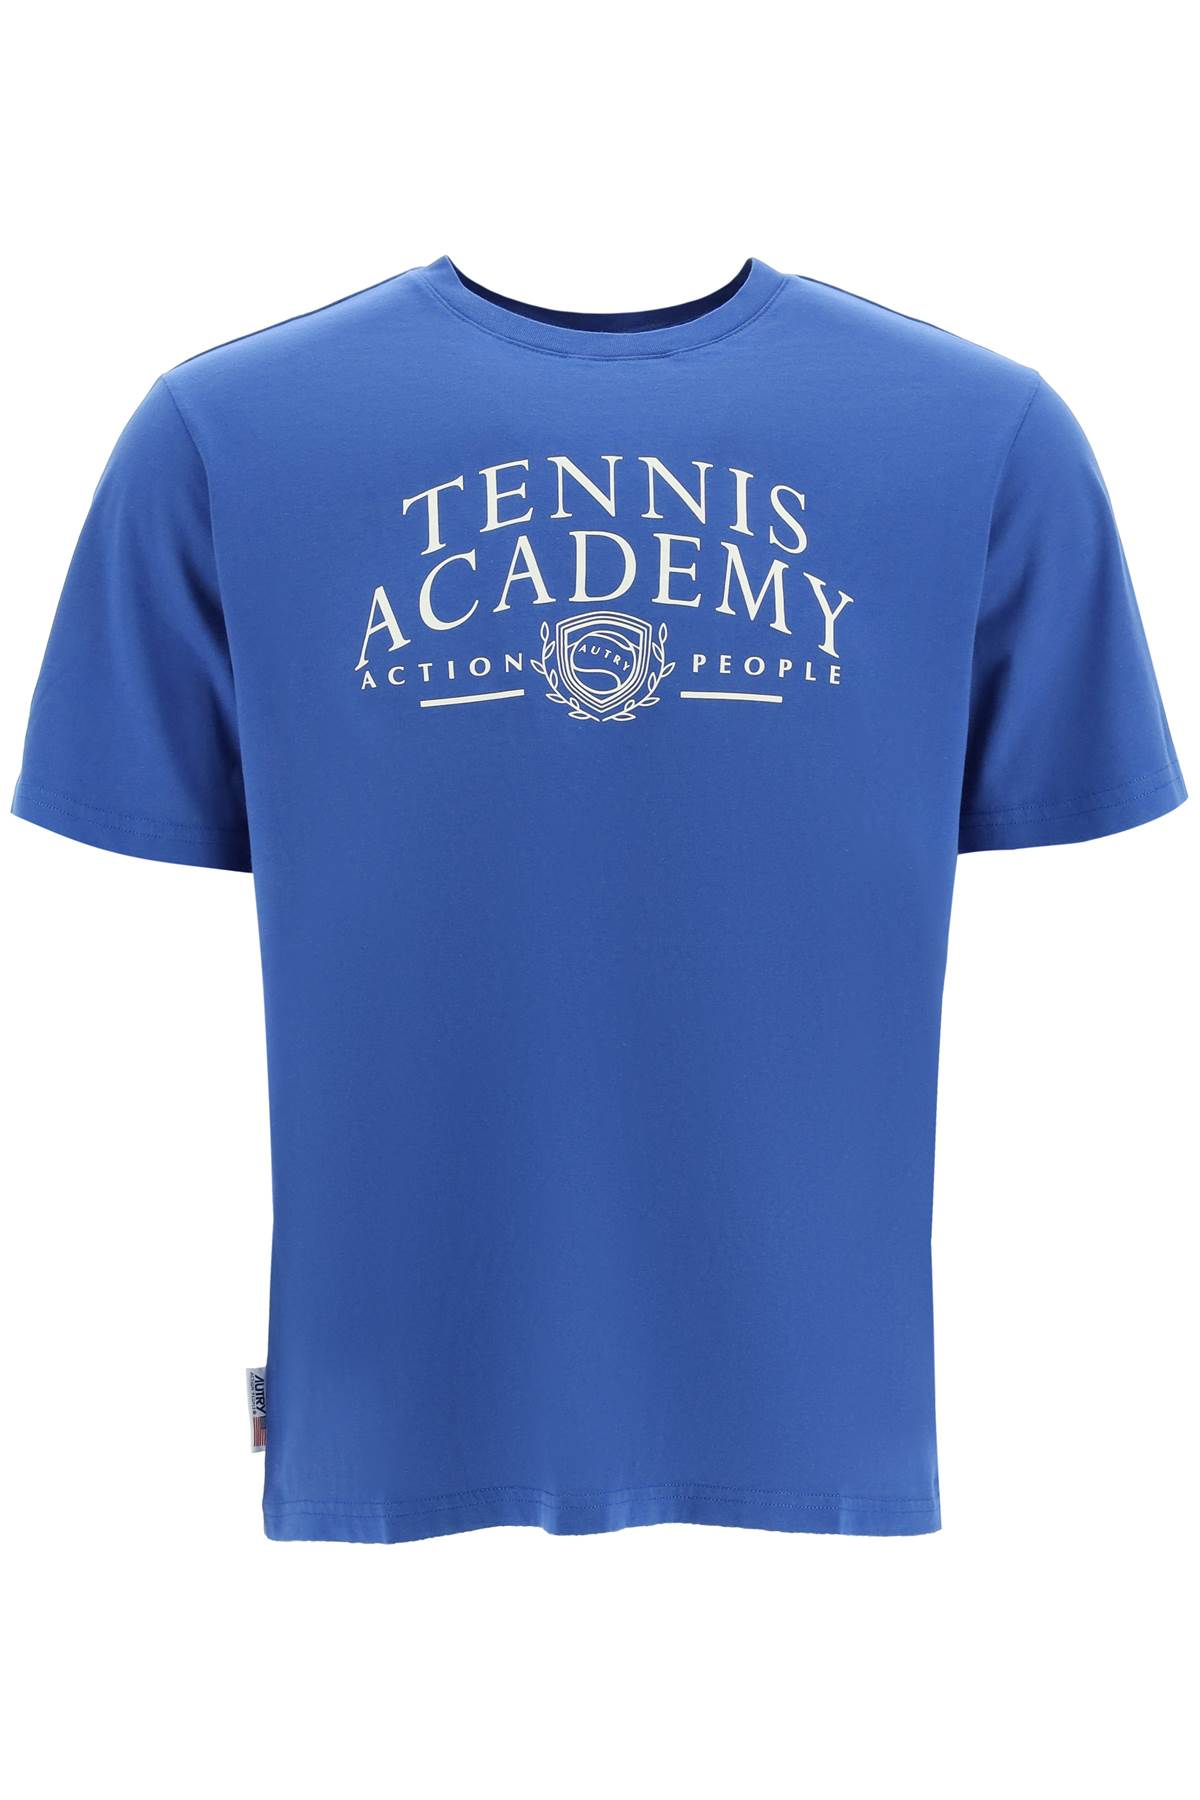 Tennis Academy T-shirt